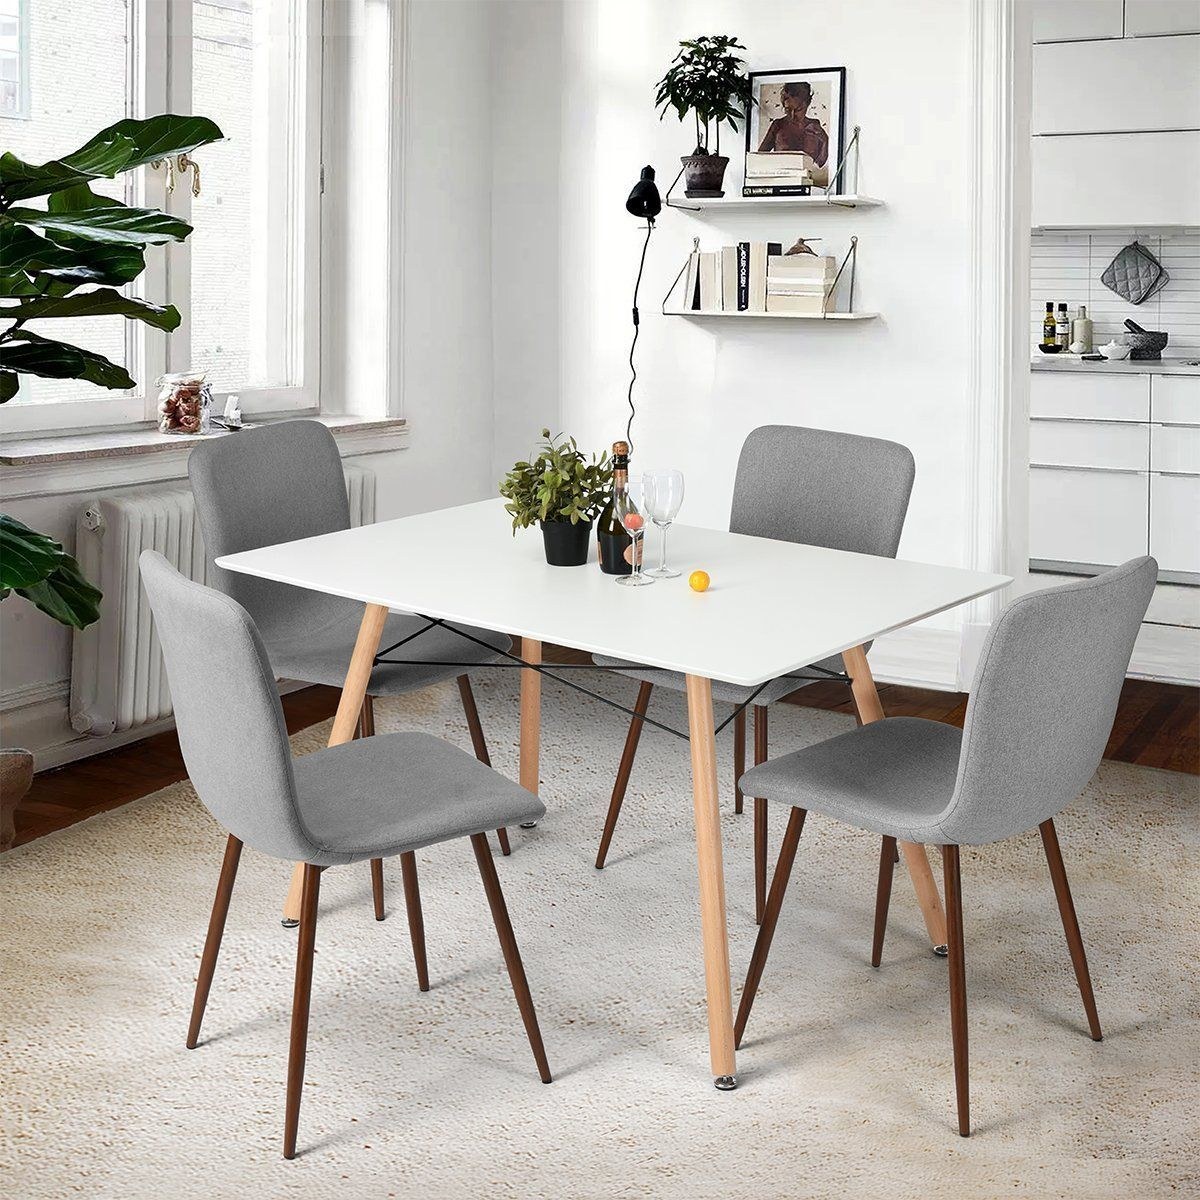 Стулья кухонные обеденные. Скандинавские стулья для кухни Norden Mid Century Design Dining Chairs. Обеденный комплект МИД сенчури. Стулья МИД сенчури икеа. Стулья МИД сенчури обеденные.